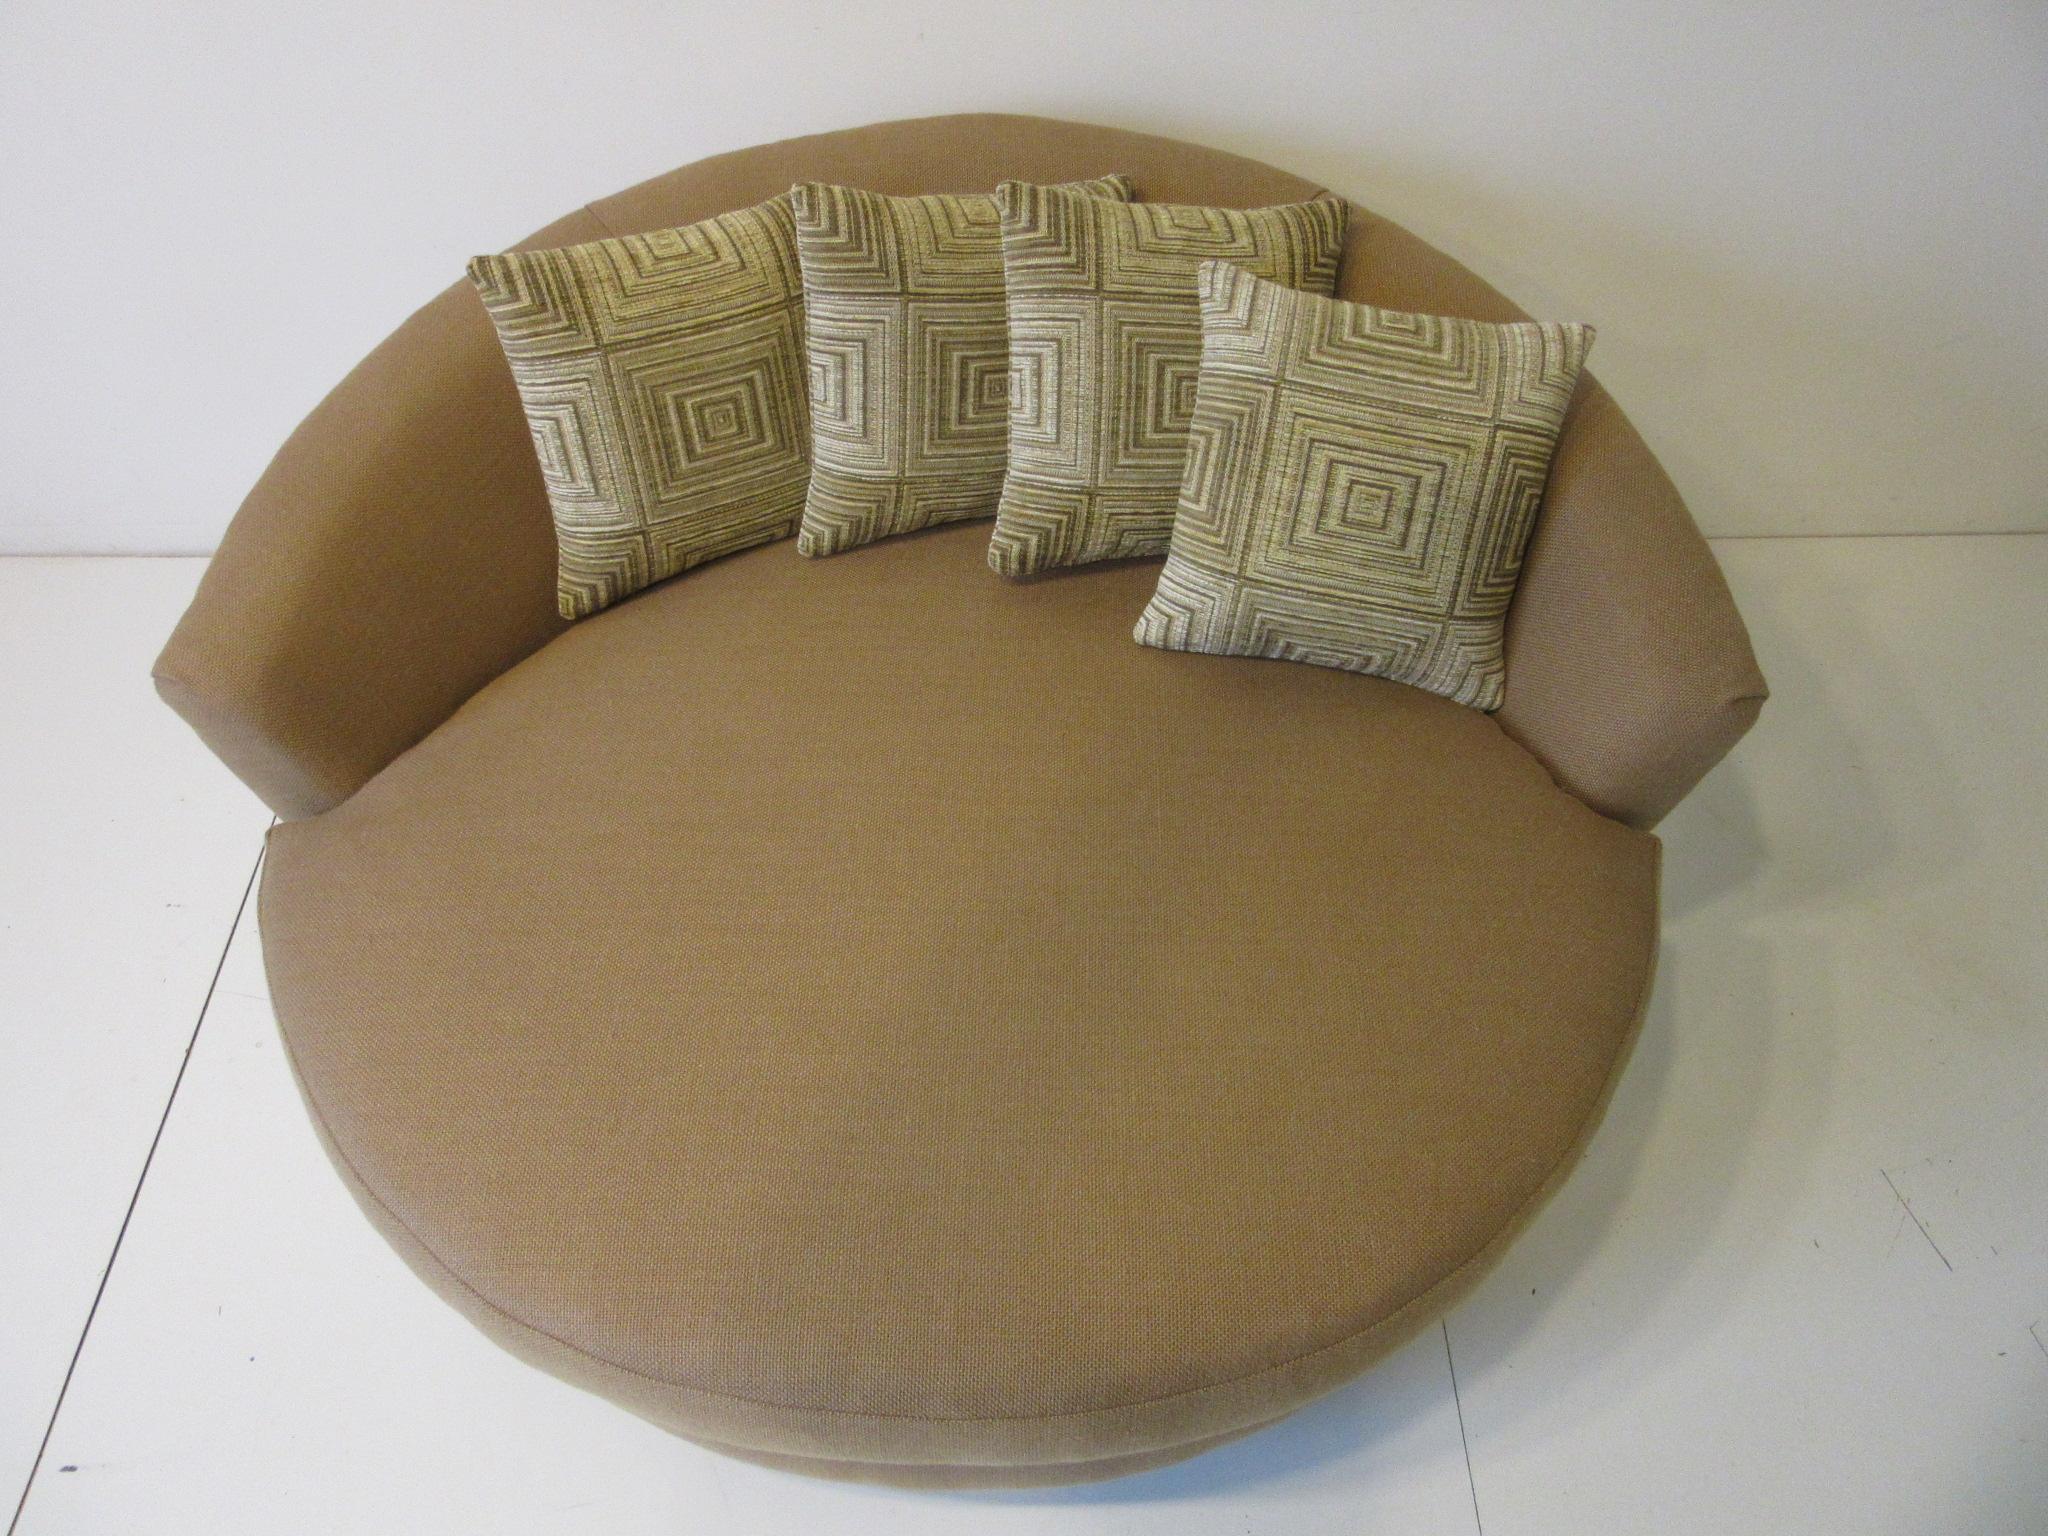 round sofa chair